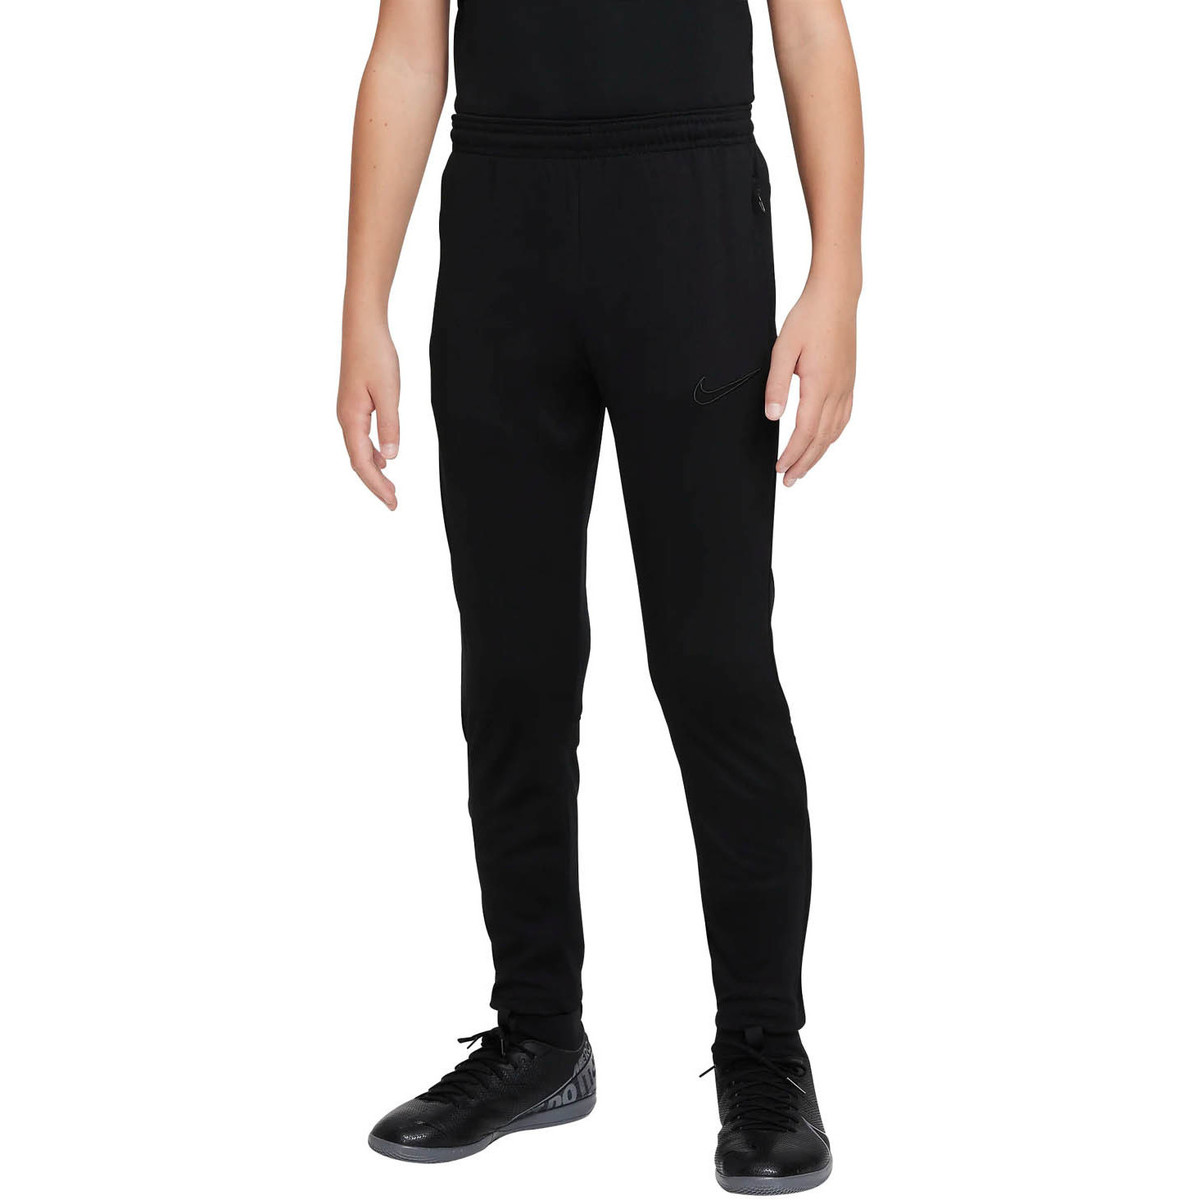 Nike Noir Pantalon Pant Academy21 Kpz Jr (black/blk) zx